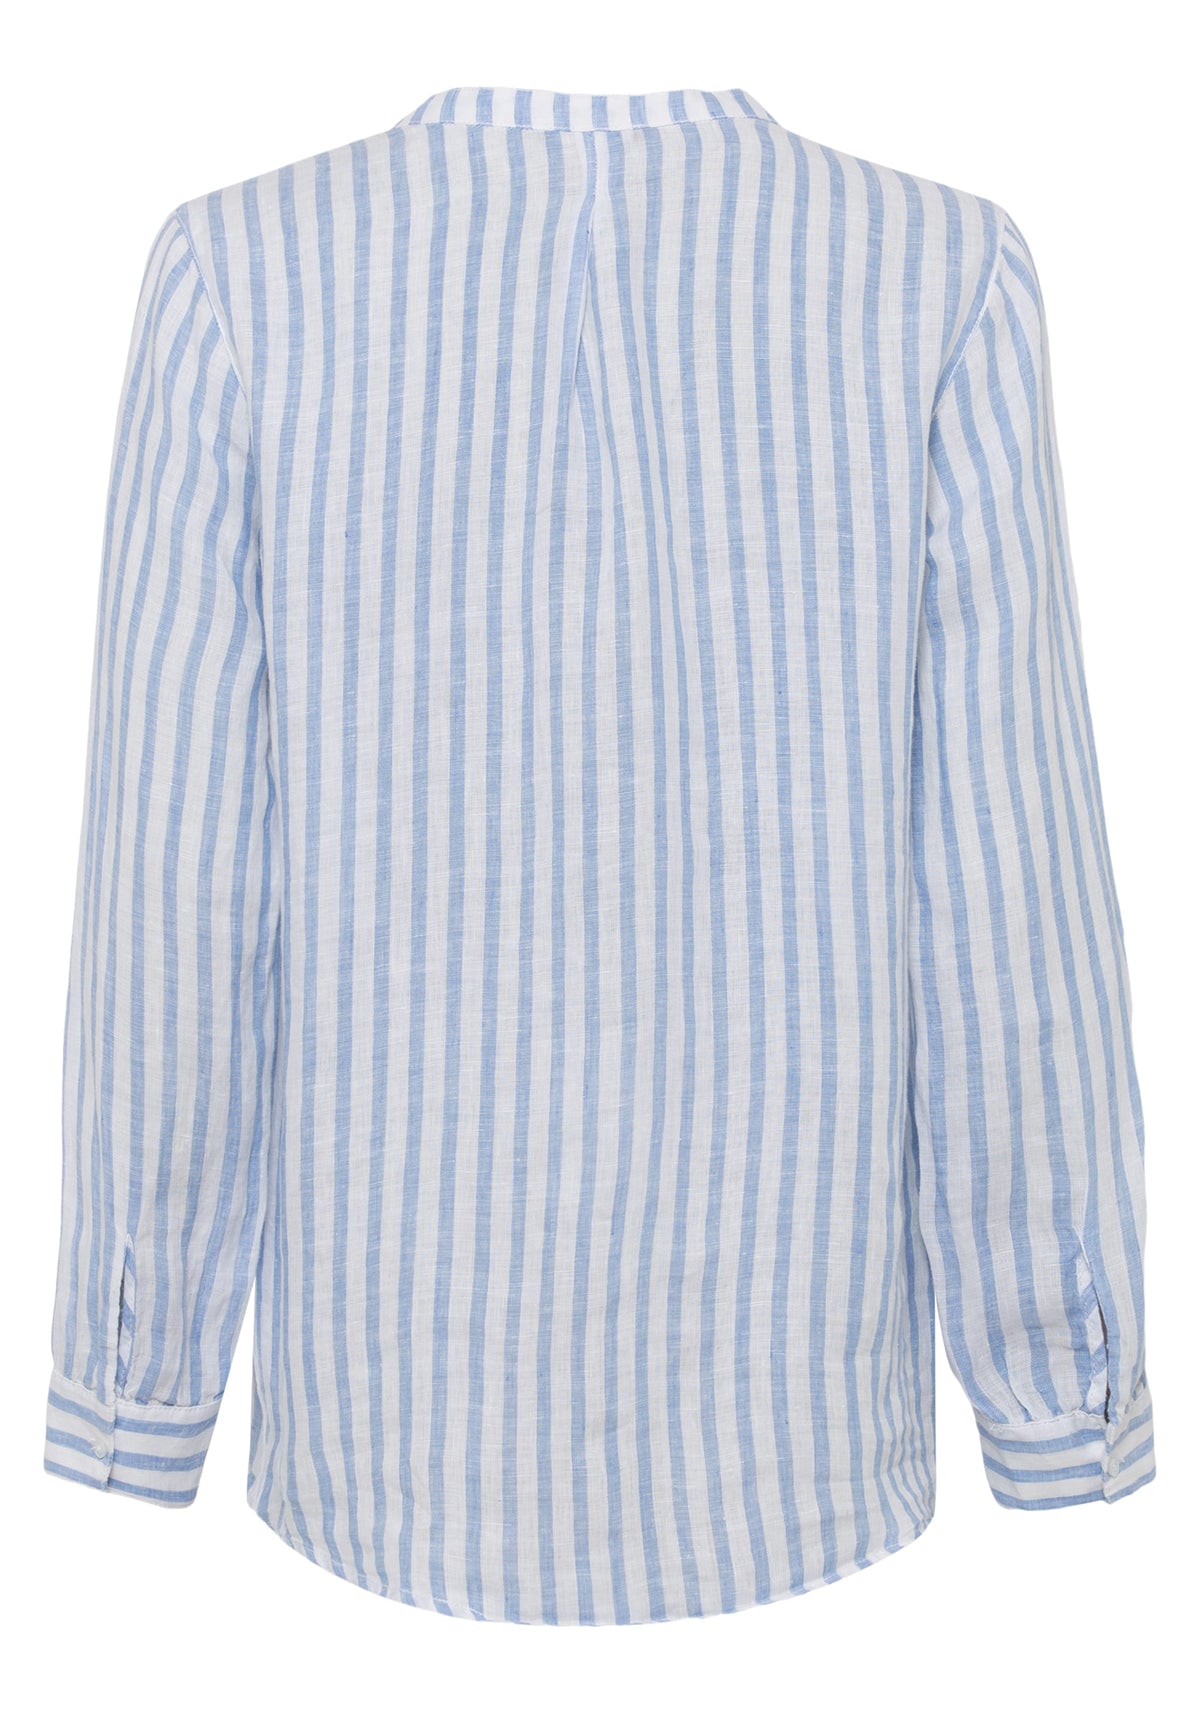 Cotton Linen Blend Long Sleeve Striped Shirt